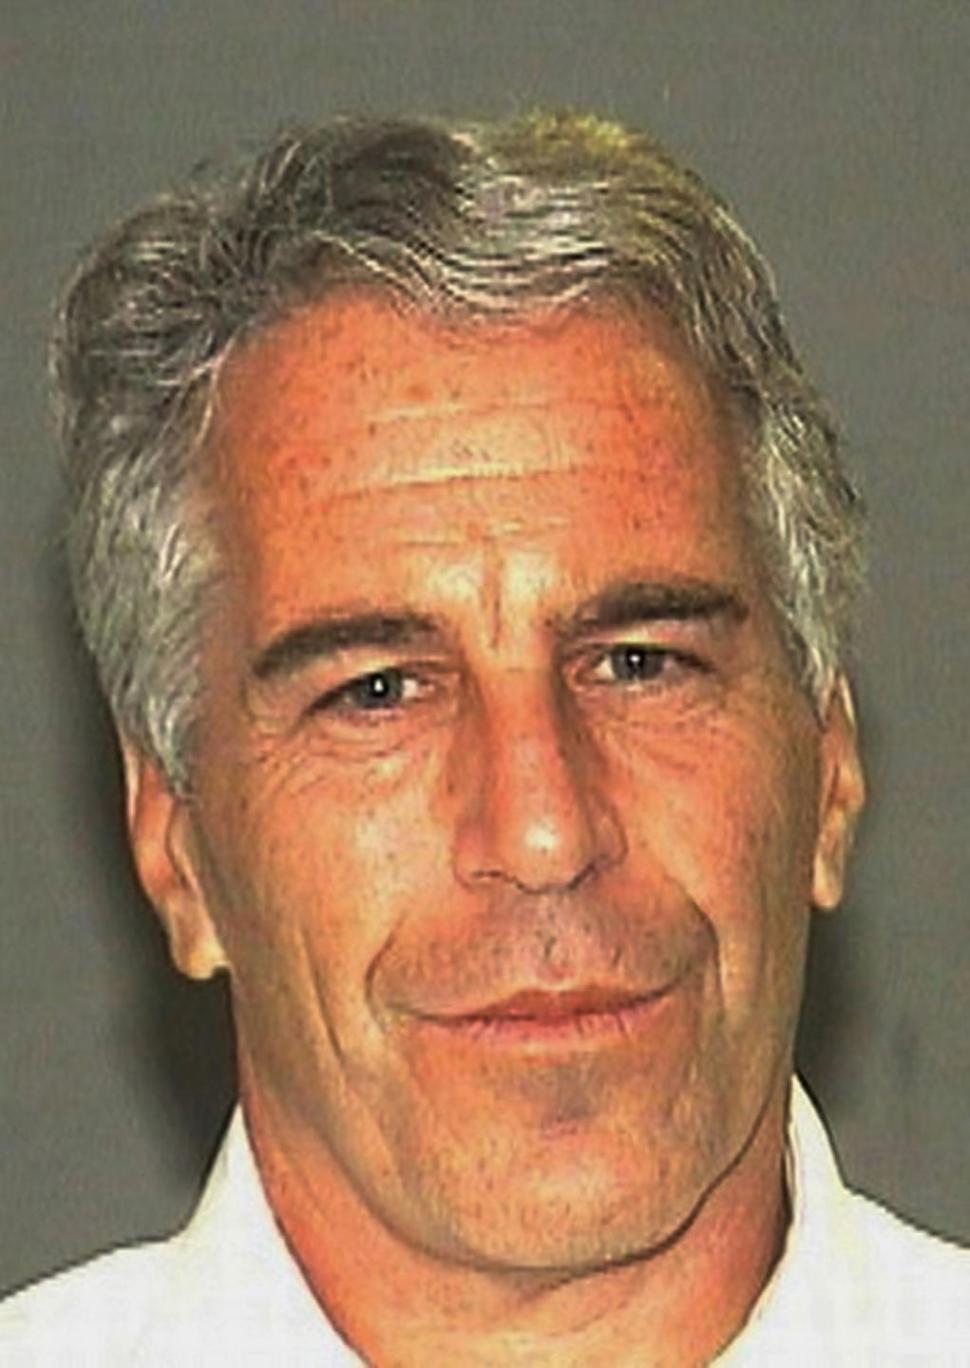 Roberts was the alleged "sex slave" of billionaire Jeffrey Epstein. 